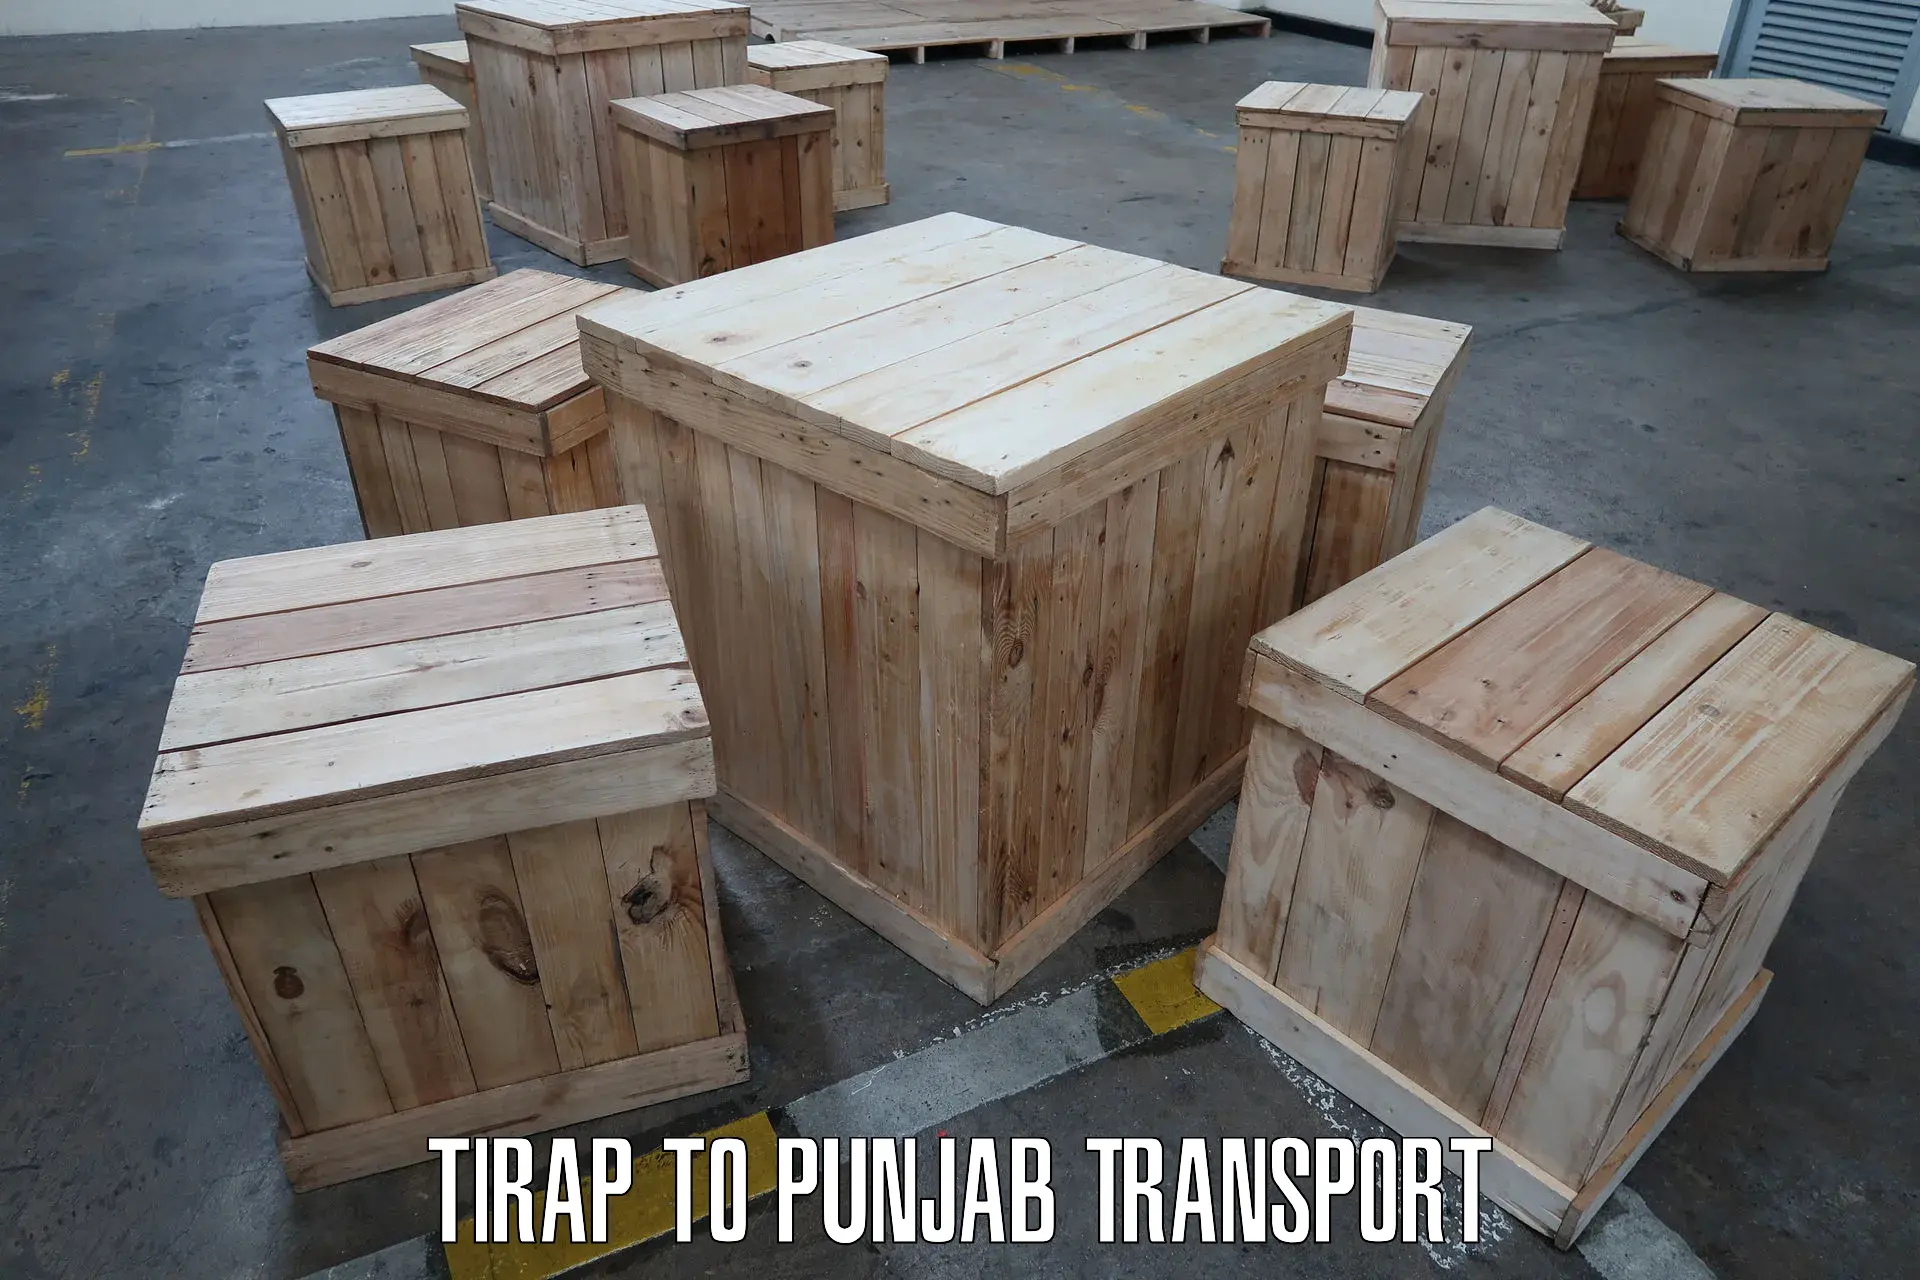 Two wheeler parcel service Tirap to Punjab